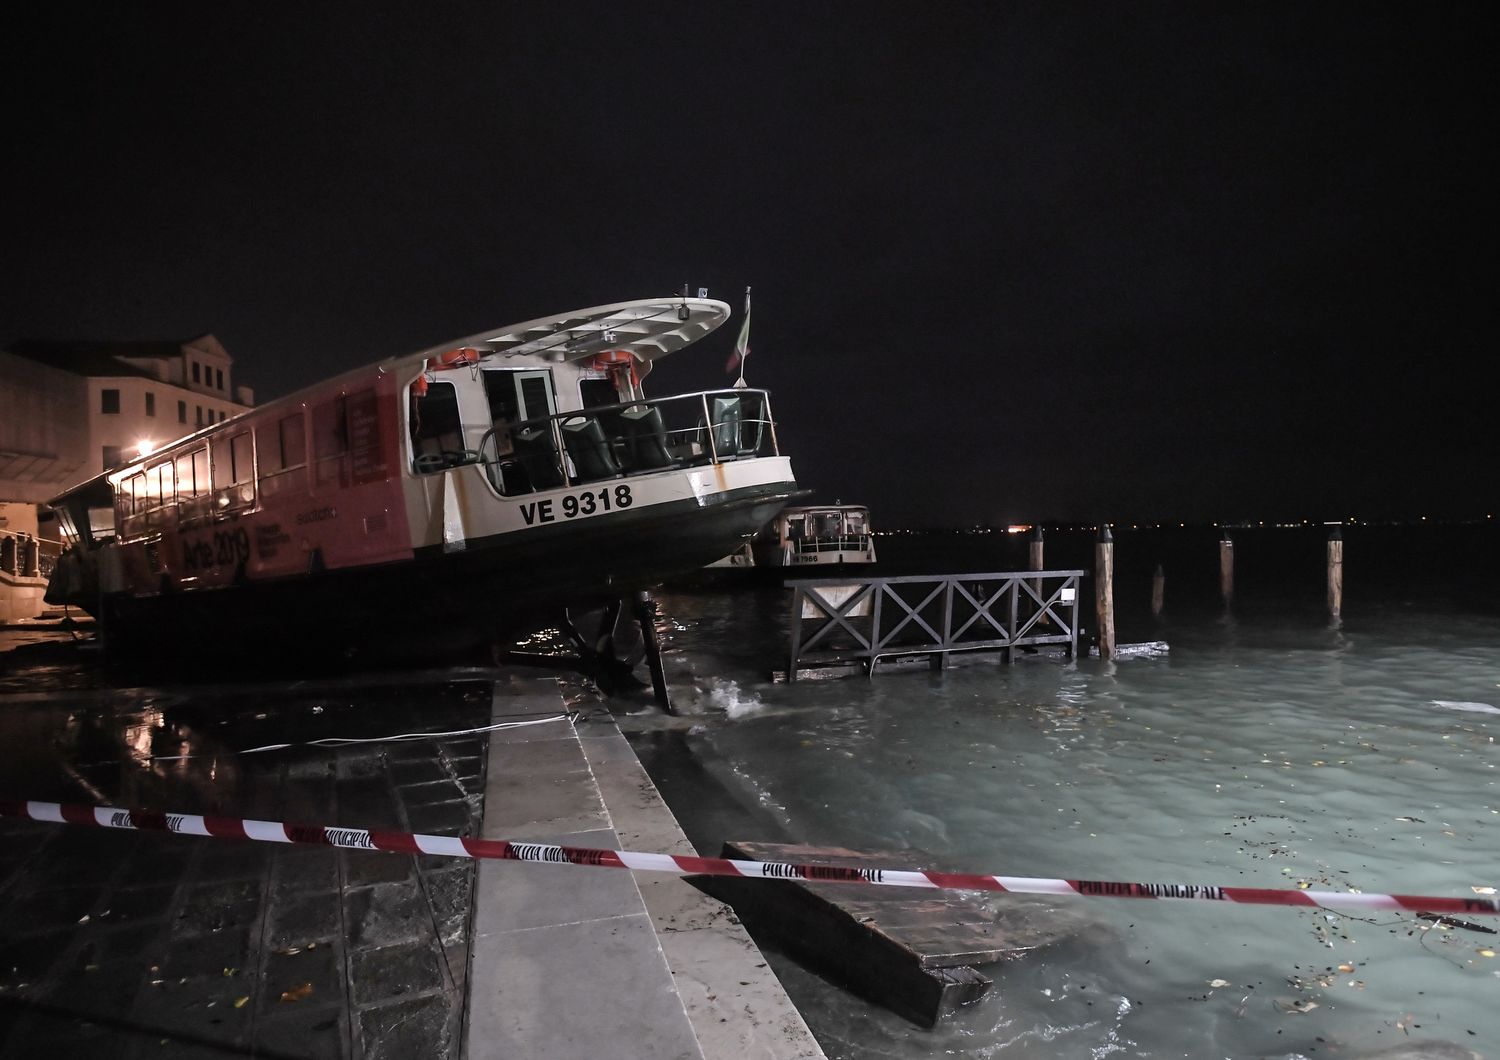 L'acqua alta record a Venezia era imprevedibile, dice il Cnr